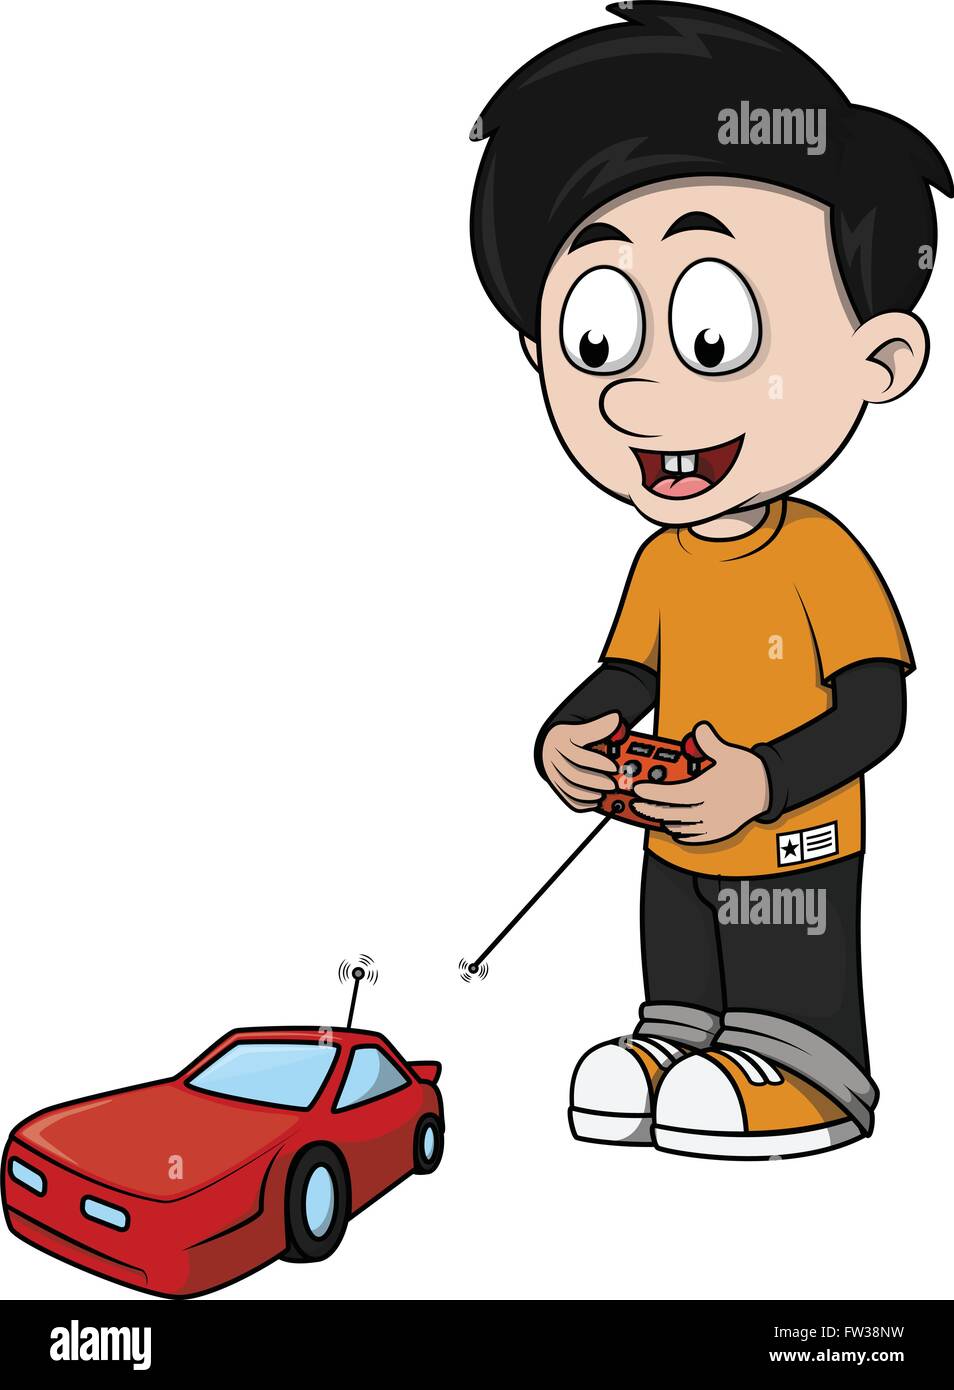 Boy playing car cartoon Stock Vector Image & Art - Alamy